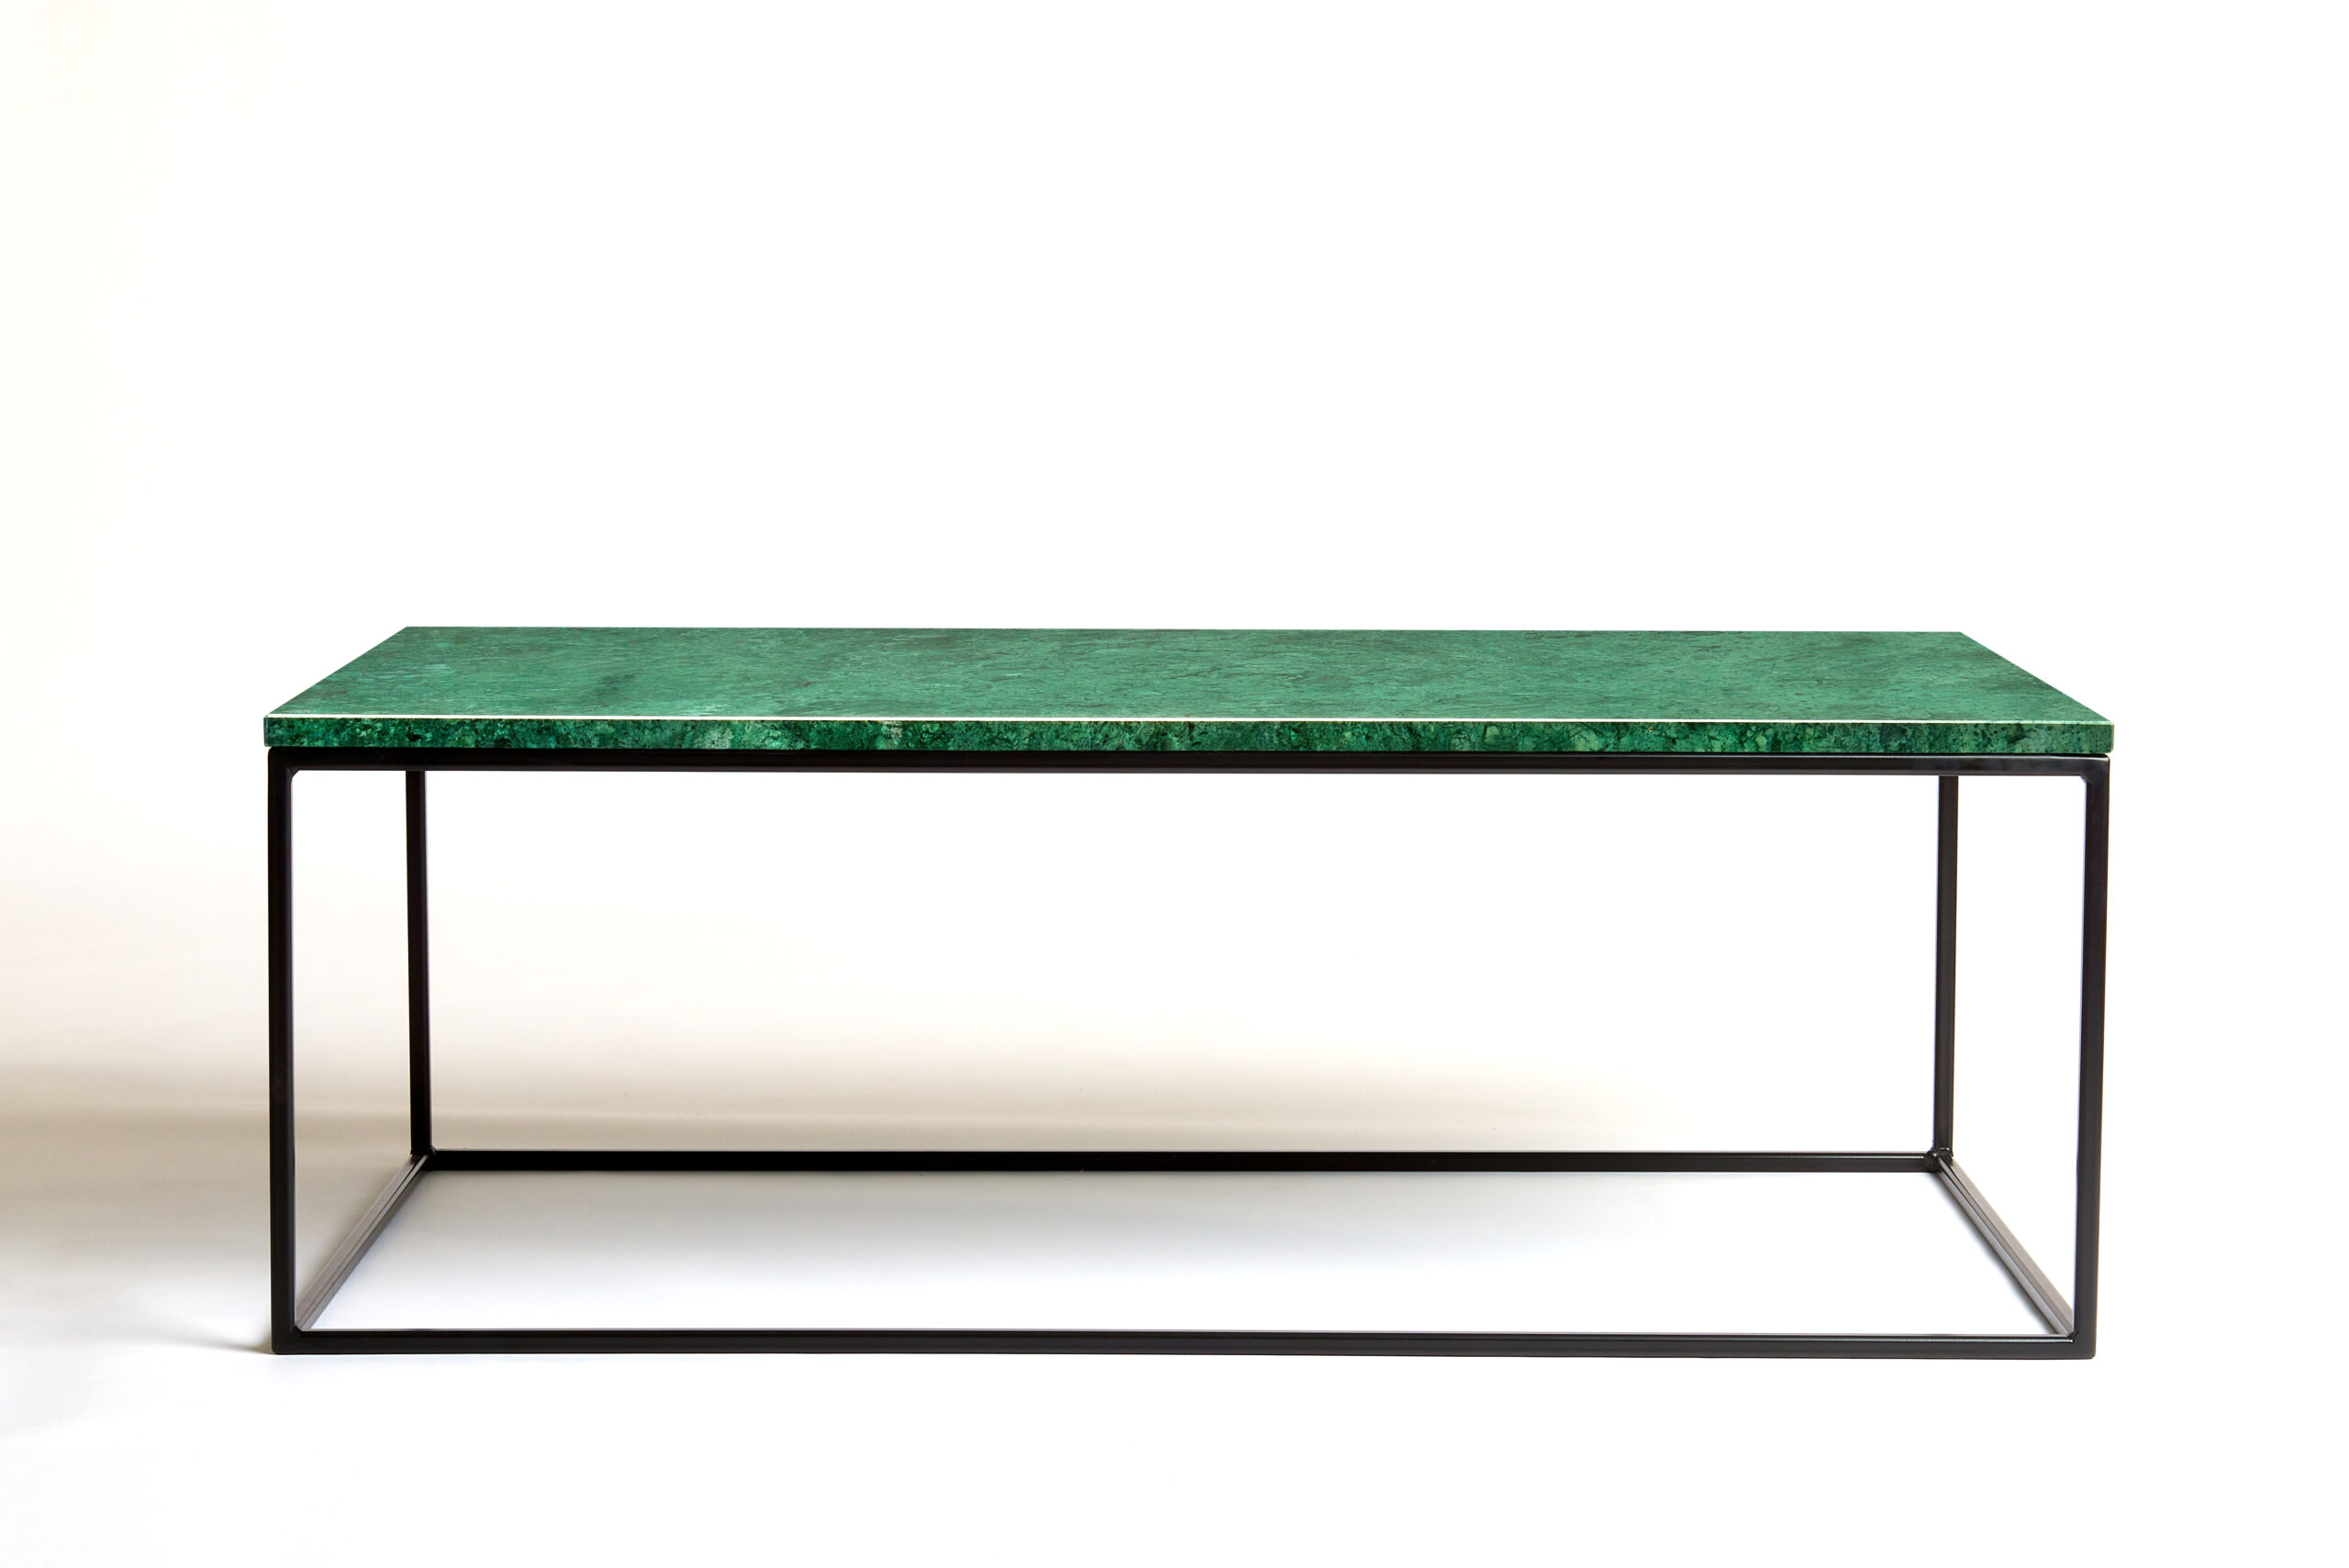 120 bij 70 cm - Groene marmeren salontafel - bovenzijaanzicht- VanMarmer